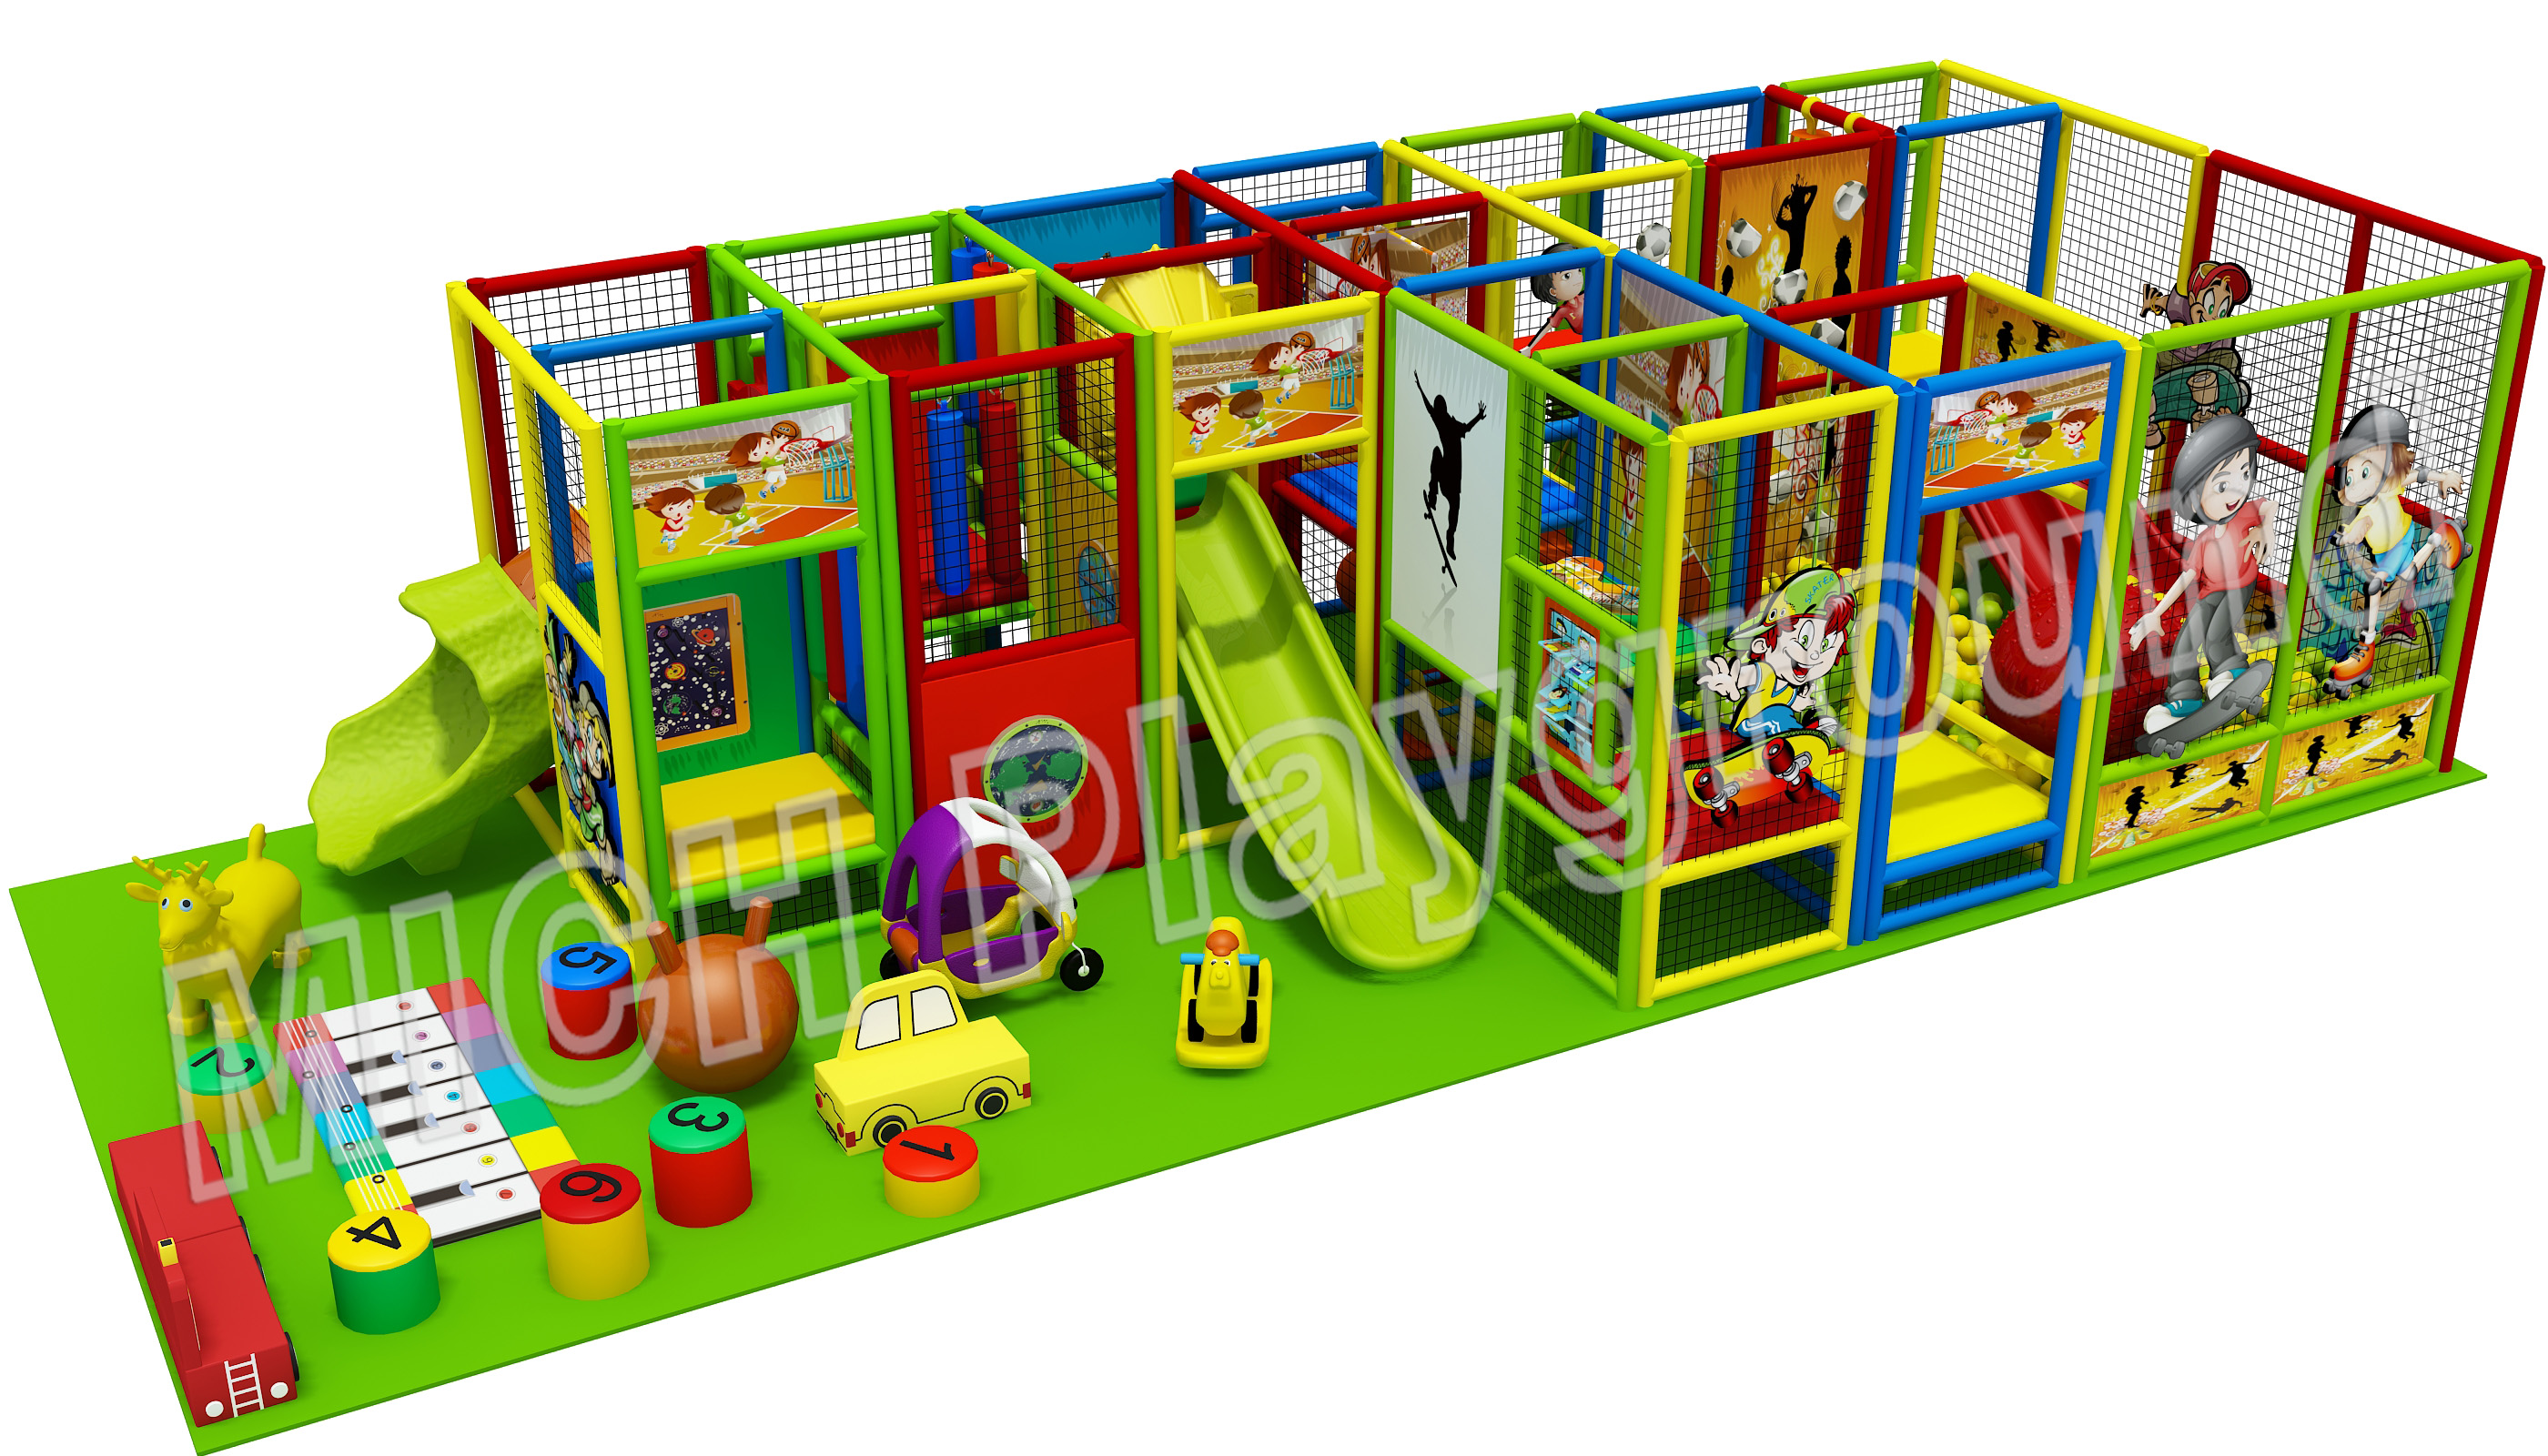 Hot Sale Indoor Amusement Soft Playground for Children 6609B